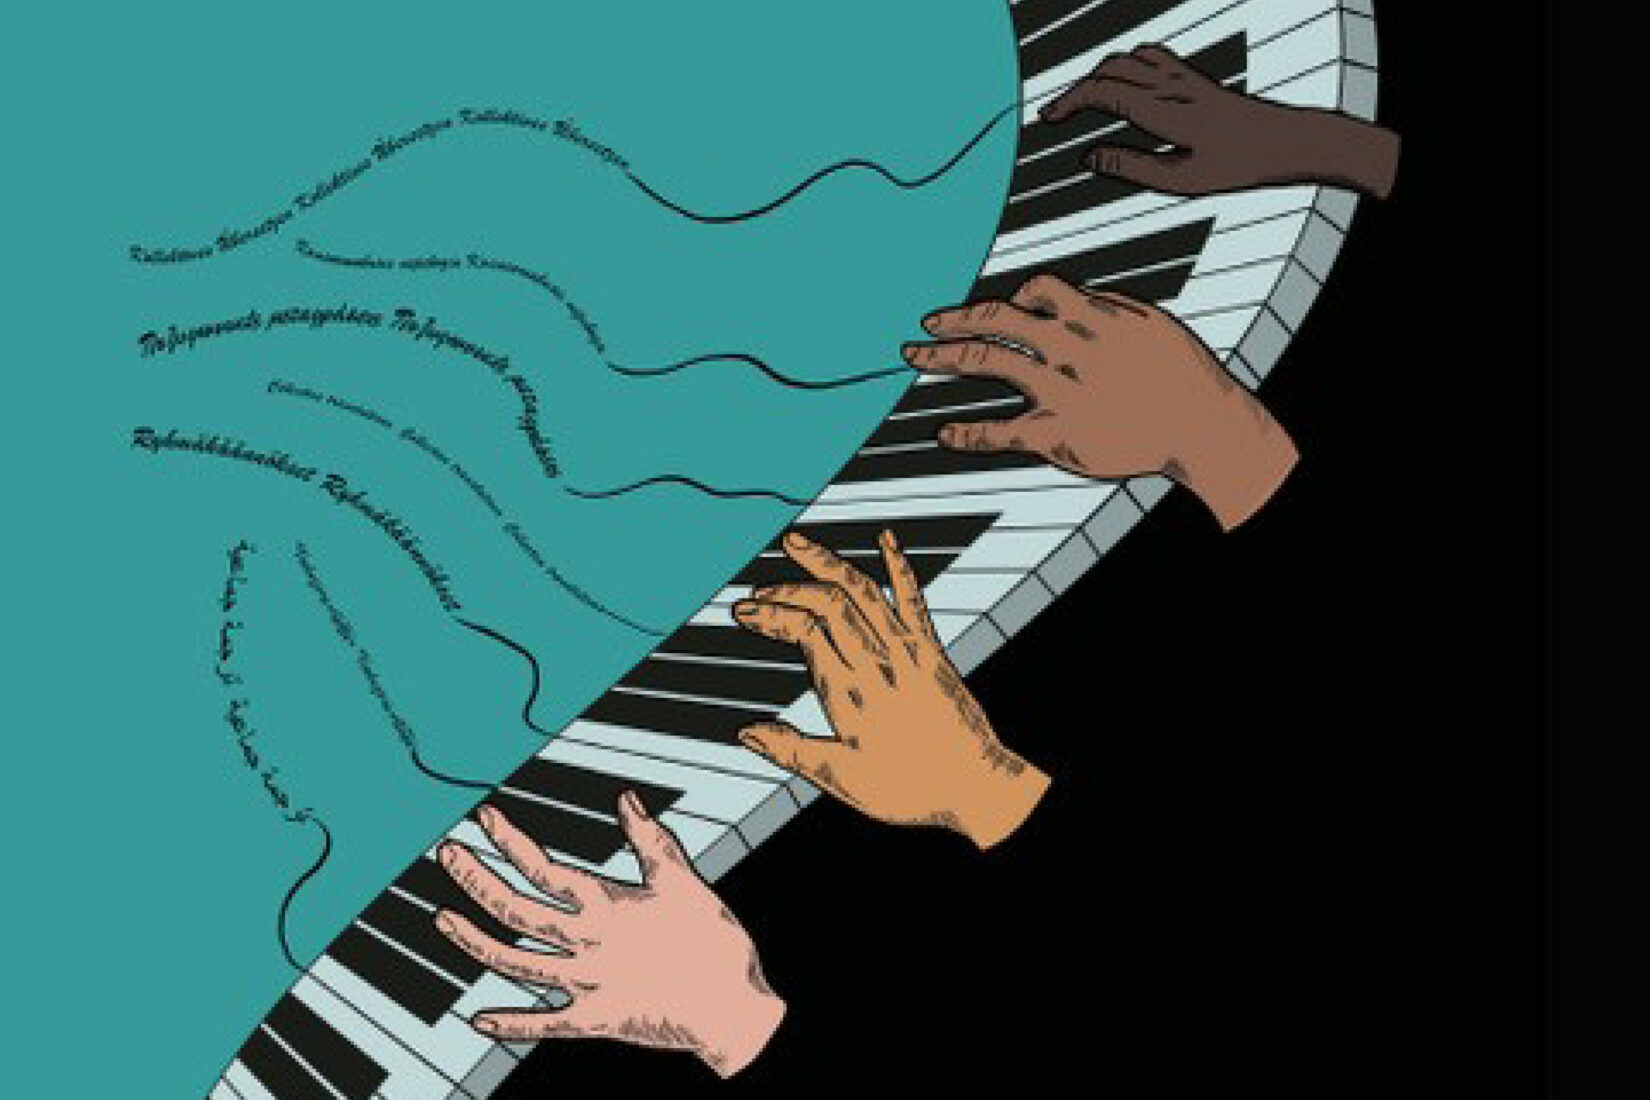 Illustration montrant des mains de toutes les couleurs jouant d'un piano, la musique s'en échappant représentée par des filets de mots qui s'envolent.